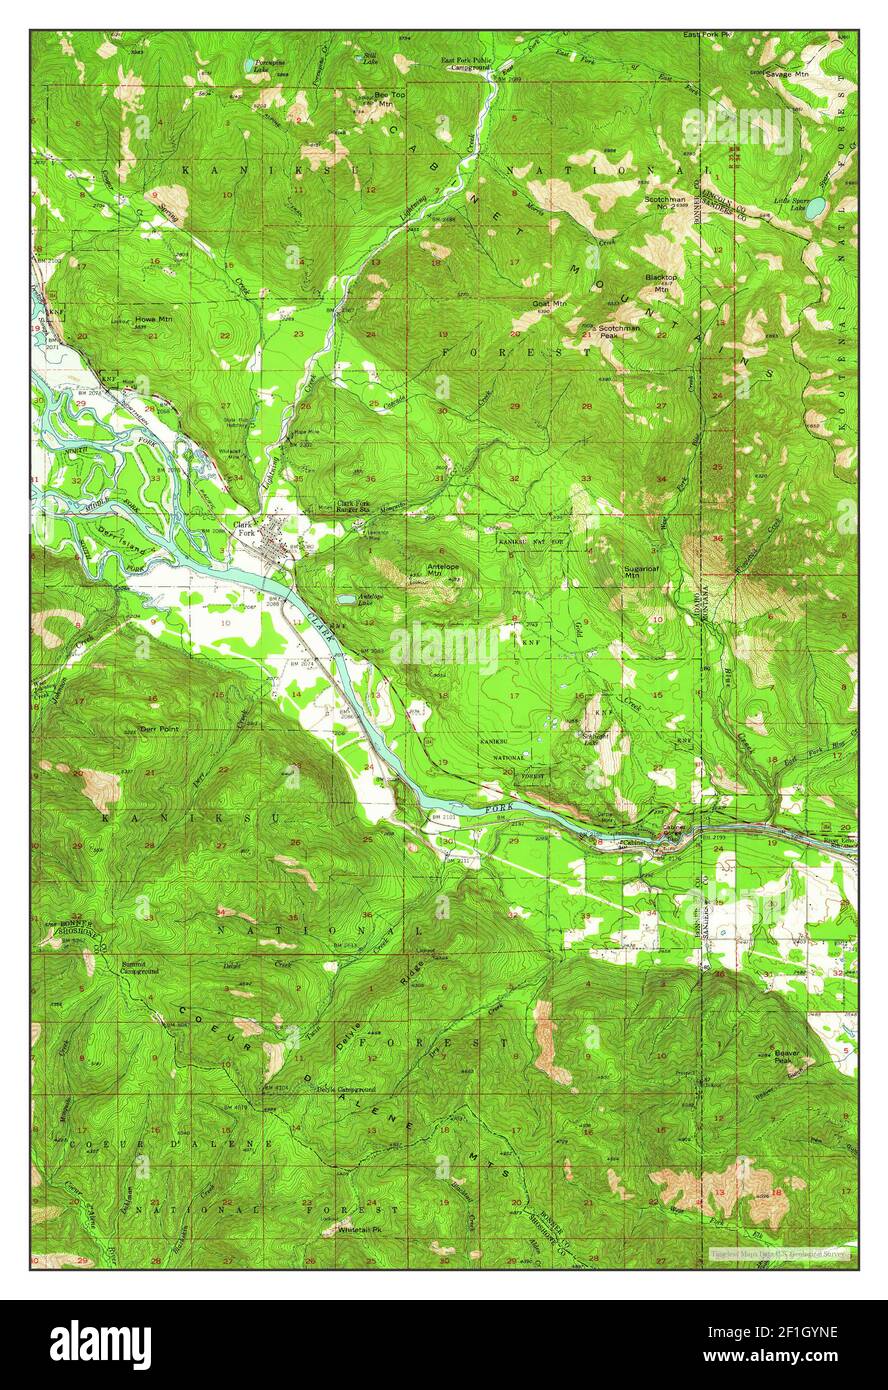 Clark Fork, Idaho, carte 1951, 1:62500, États-Unis d'Amérique par Timeless Maps, données U.S. Geological Survey Banque D'Images